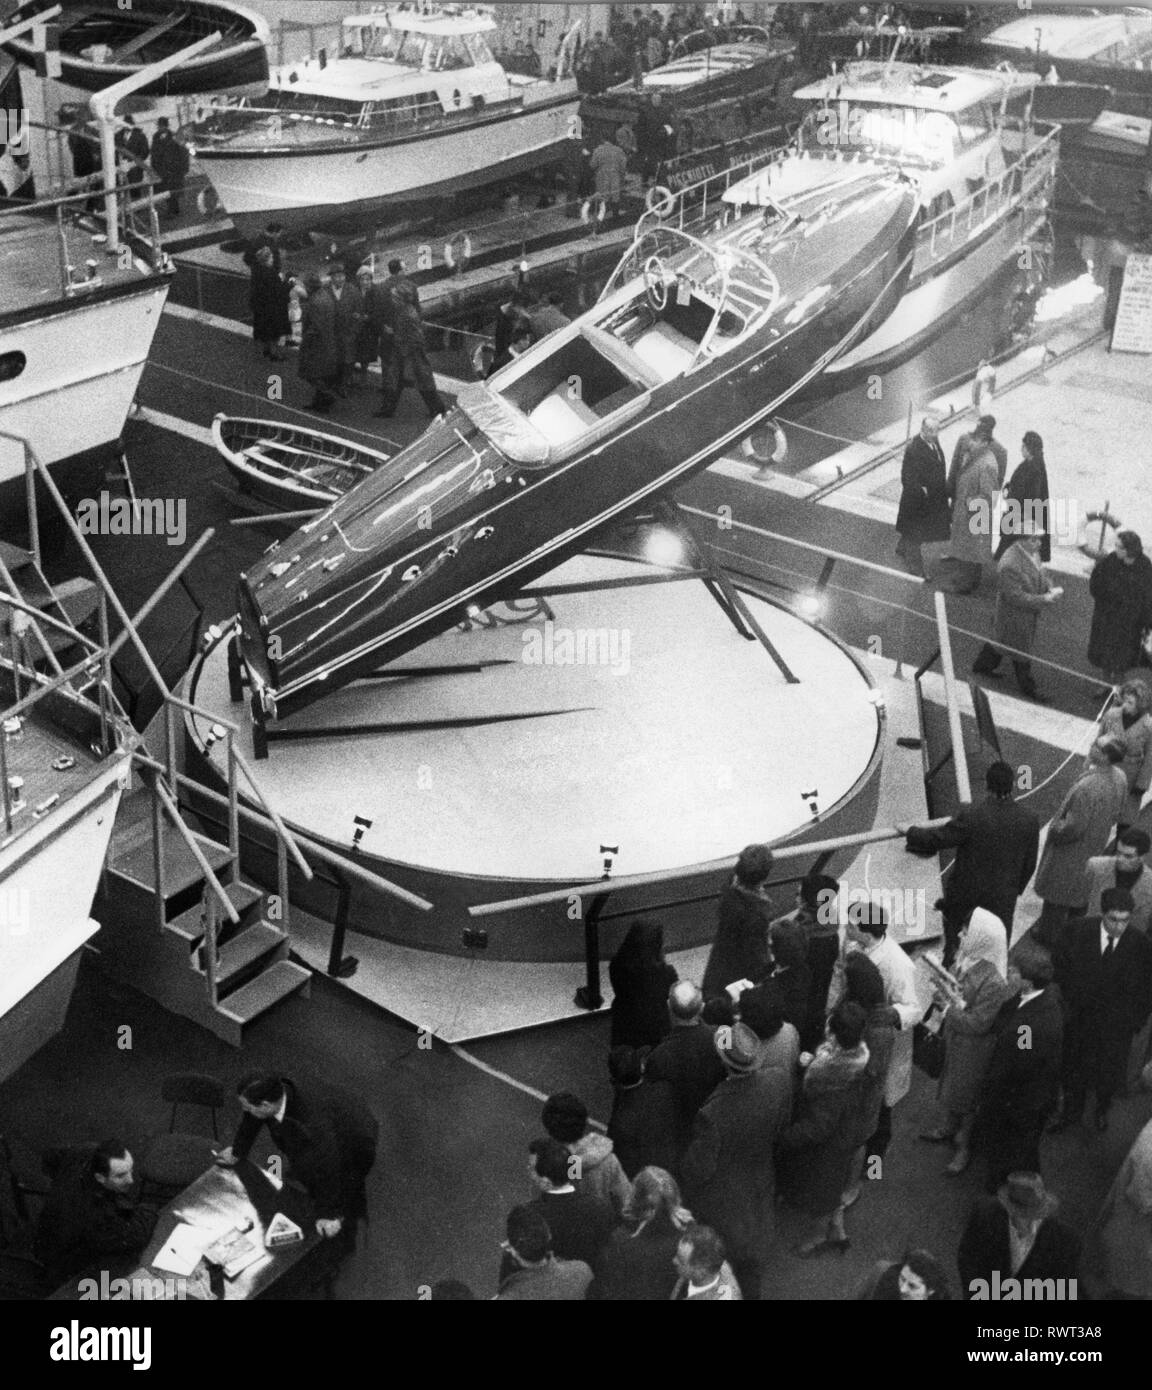 Genoa International Boat Show, salone nautico internazionale di genova, 1963 Stock Photo